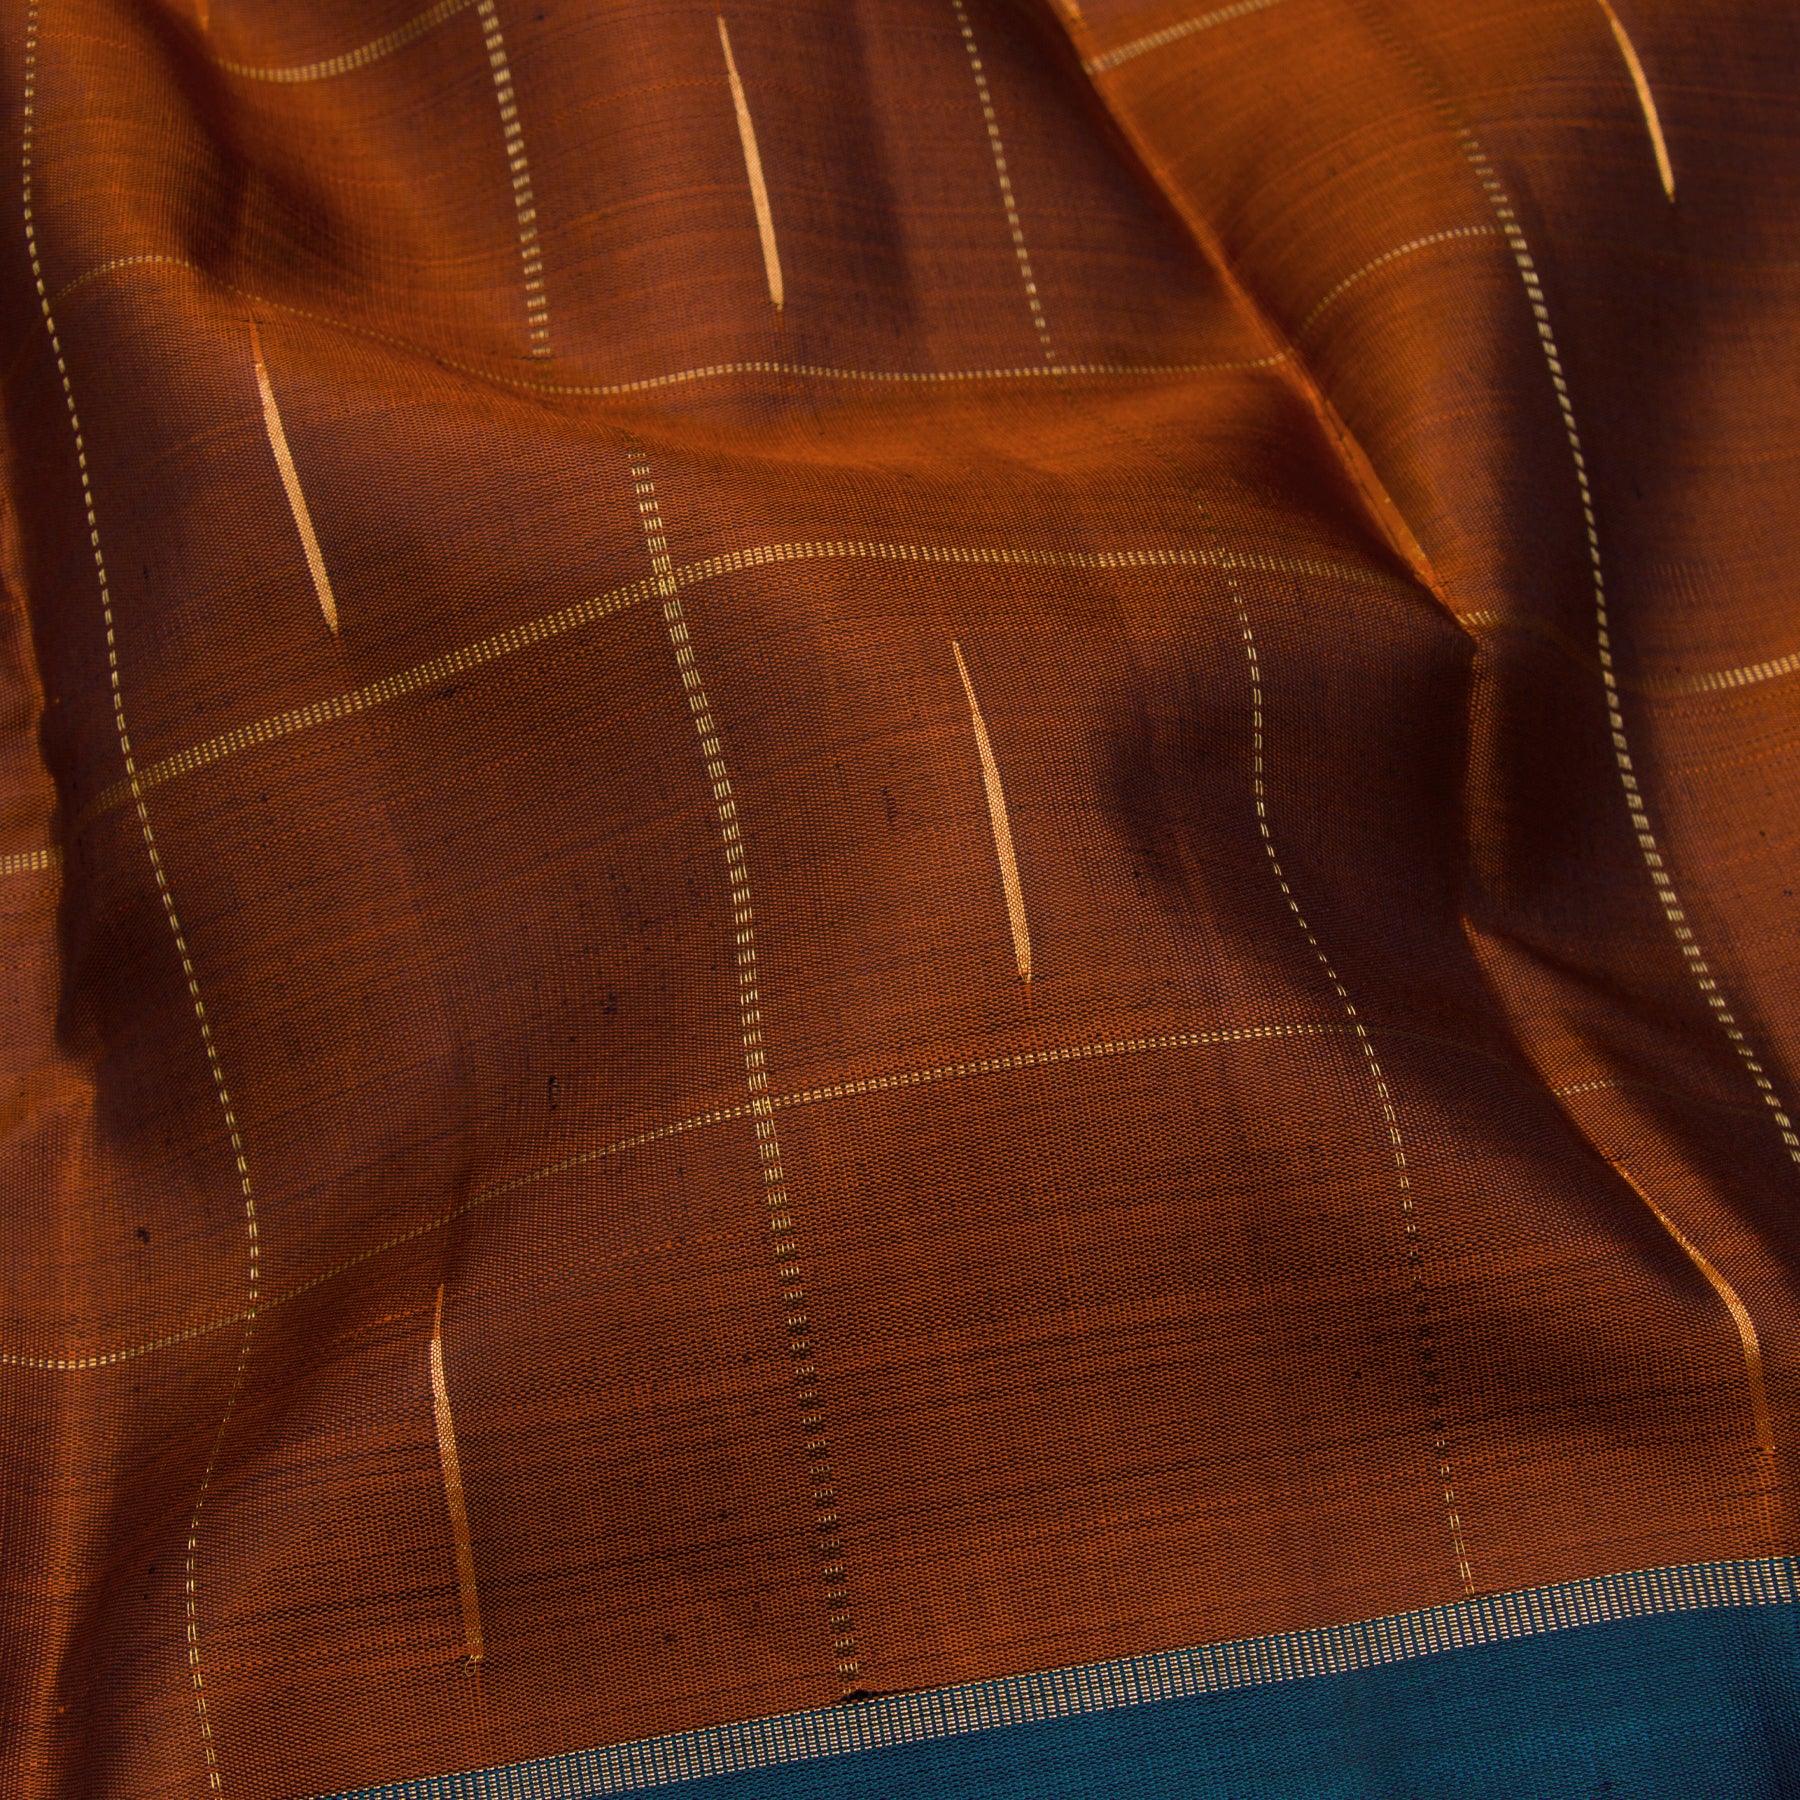 Kanakavalli Kanjivaram Silk Sari 23-599-HS001-11133 - Fabric View